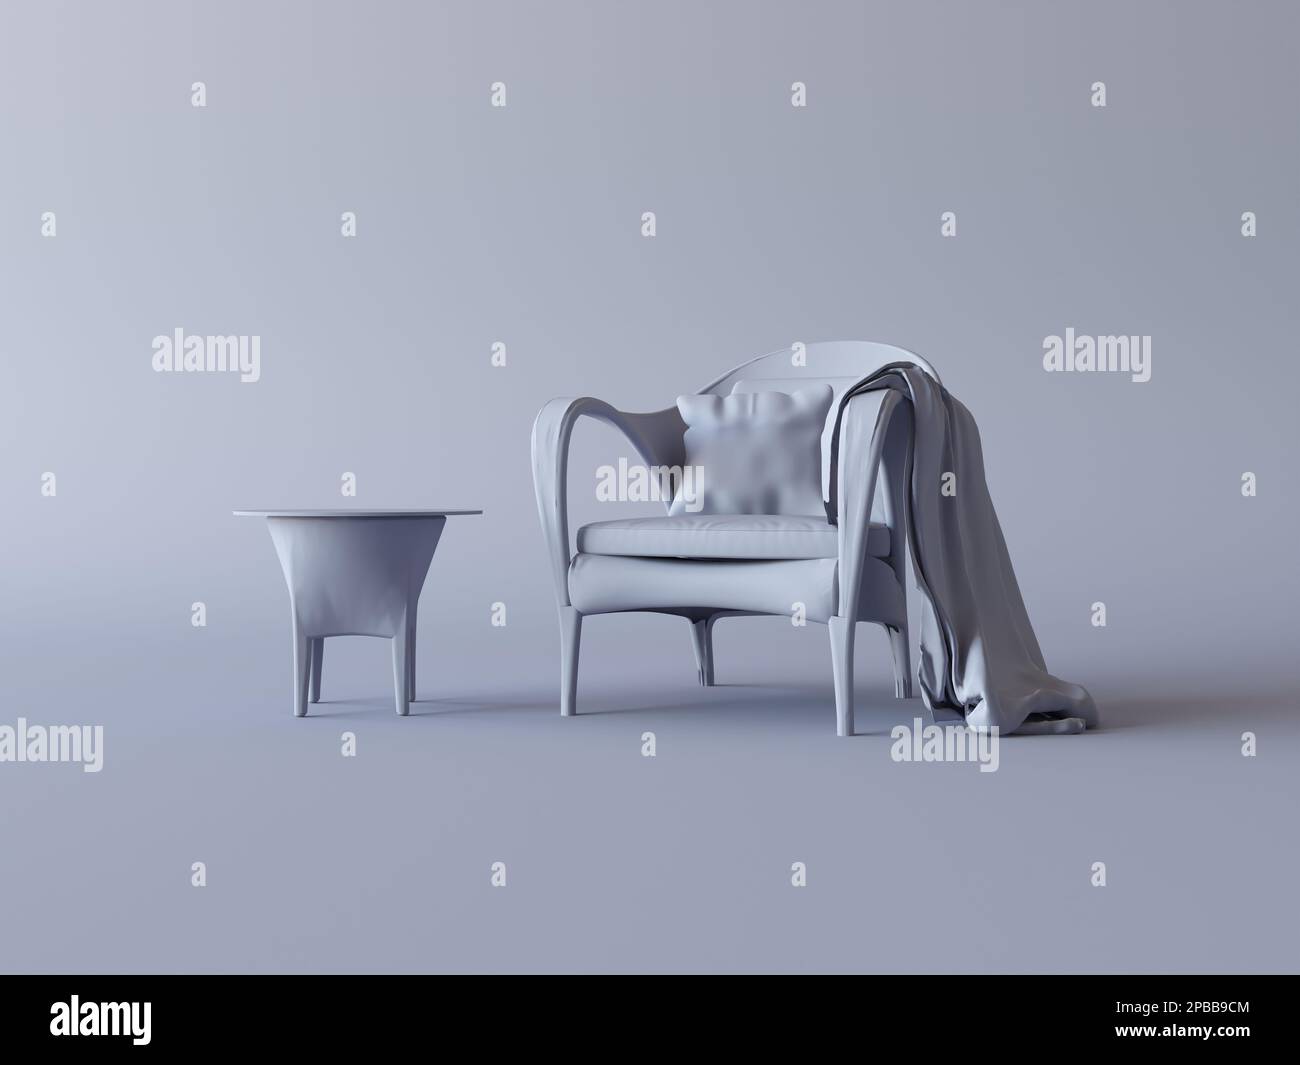 Fauteuil monochrome simple et table basse dans une chambre à l'intérieur gris sombre. Composition couleur unique, style minimaliste. 3D rendu, arrière-plan du cadre photo Banque D'Images